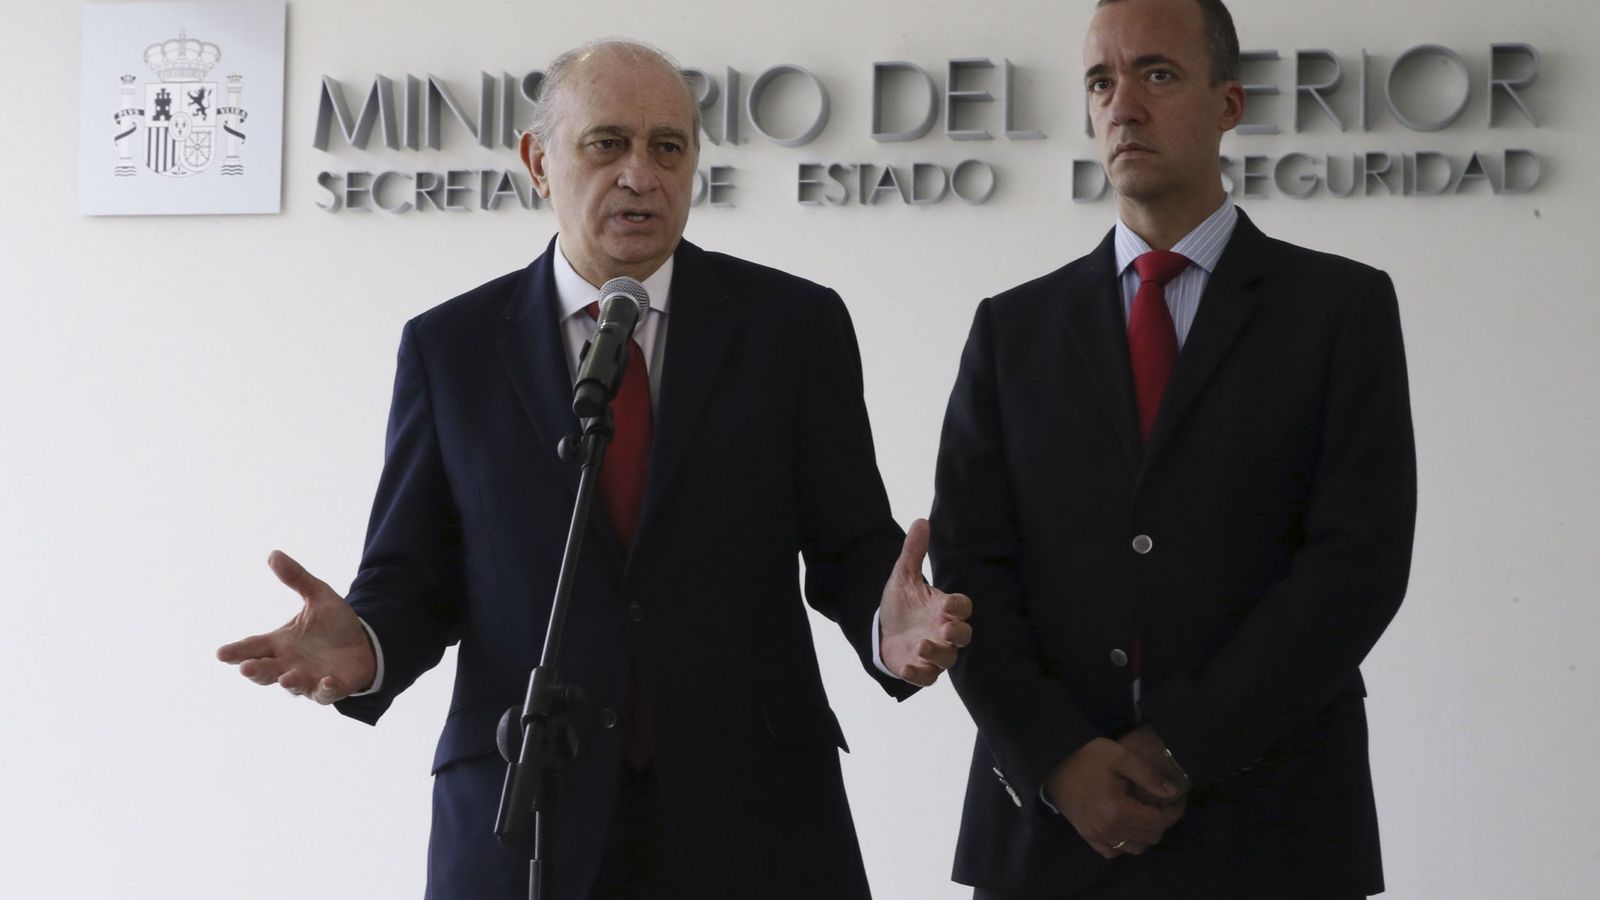 Foto: El ministro del Interior, Jorge Fernández Díaz, junto al secretario de Estado de Seguridad, Francisco Martínez. (EFE)